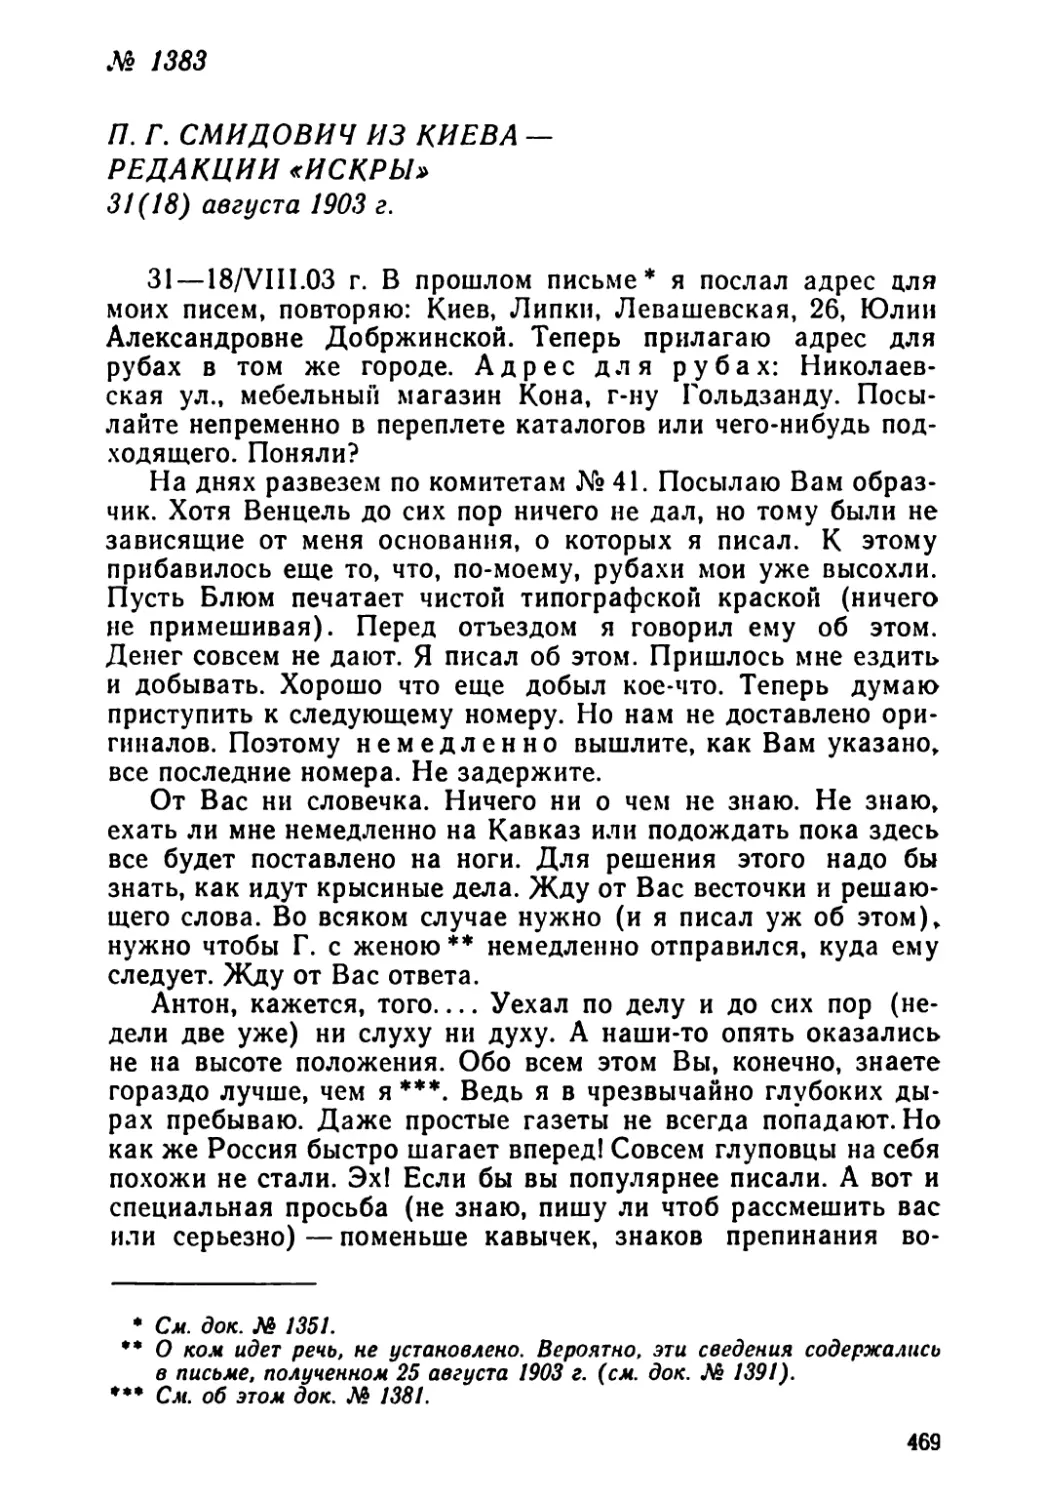 № 1383 П. Г. Смидович из Киева — редакции «Искры». 31 августа